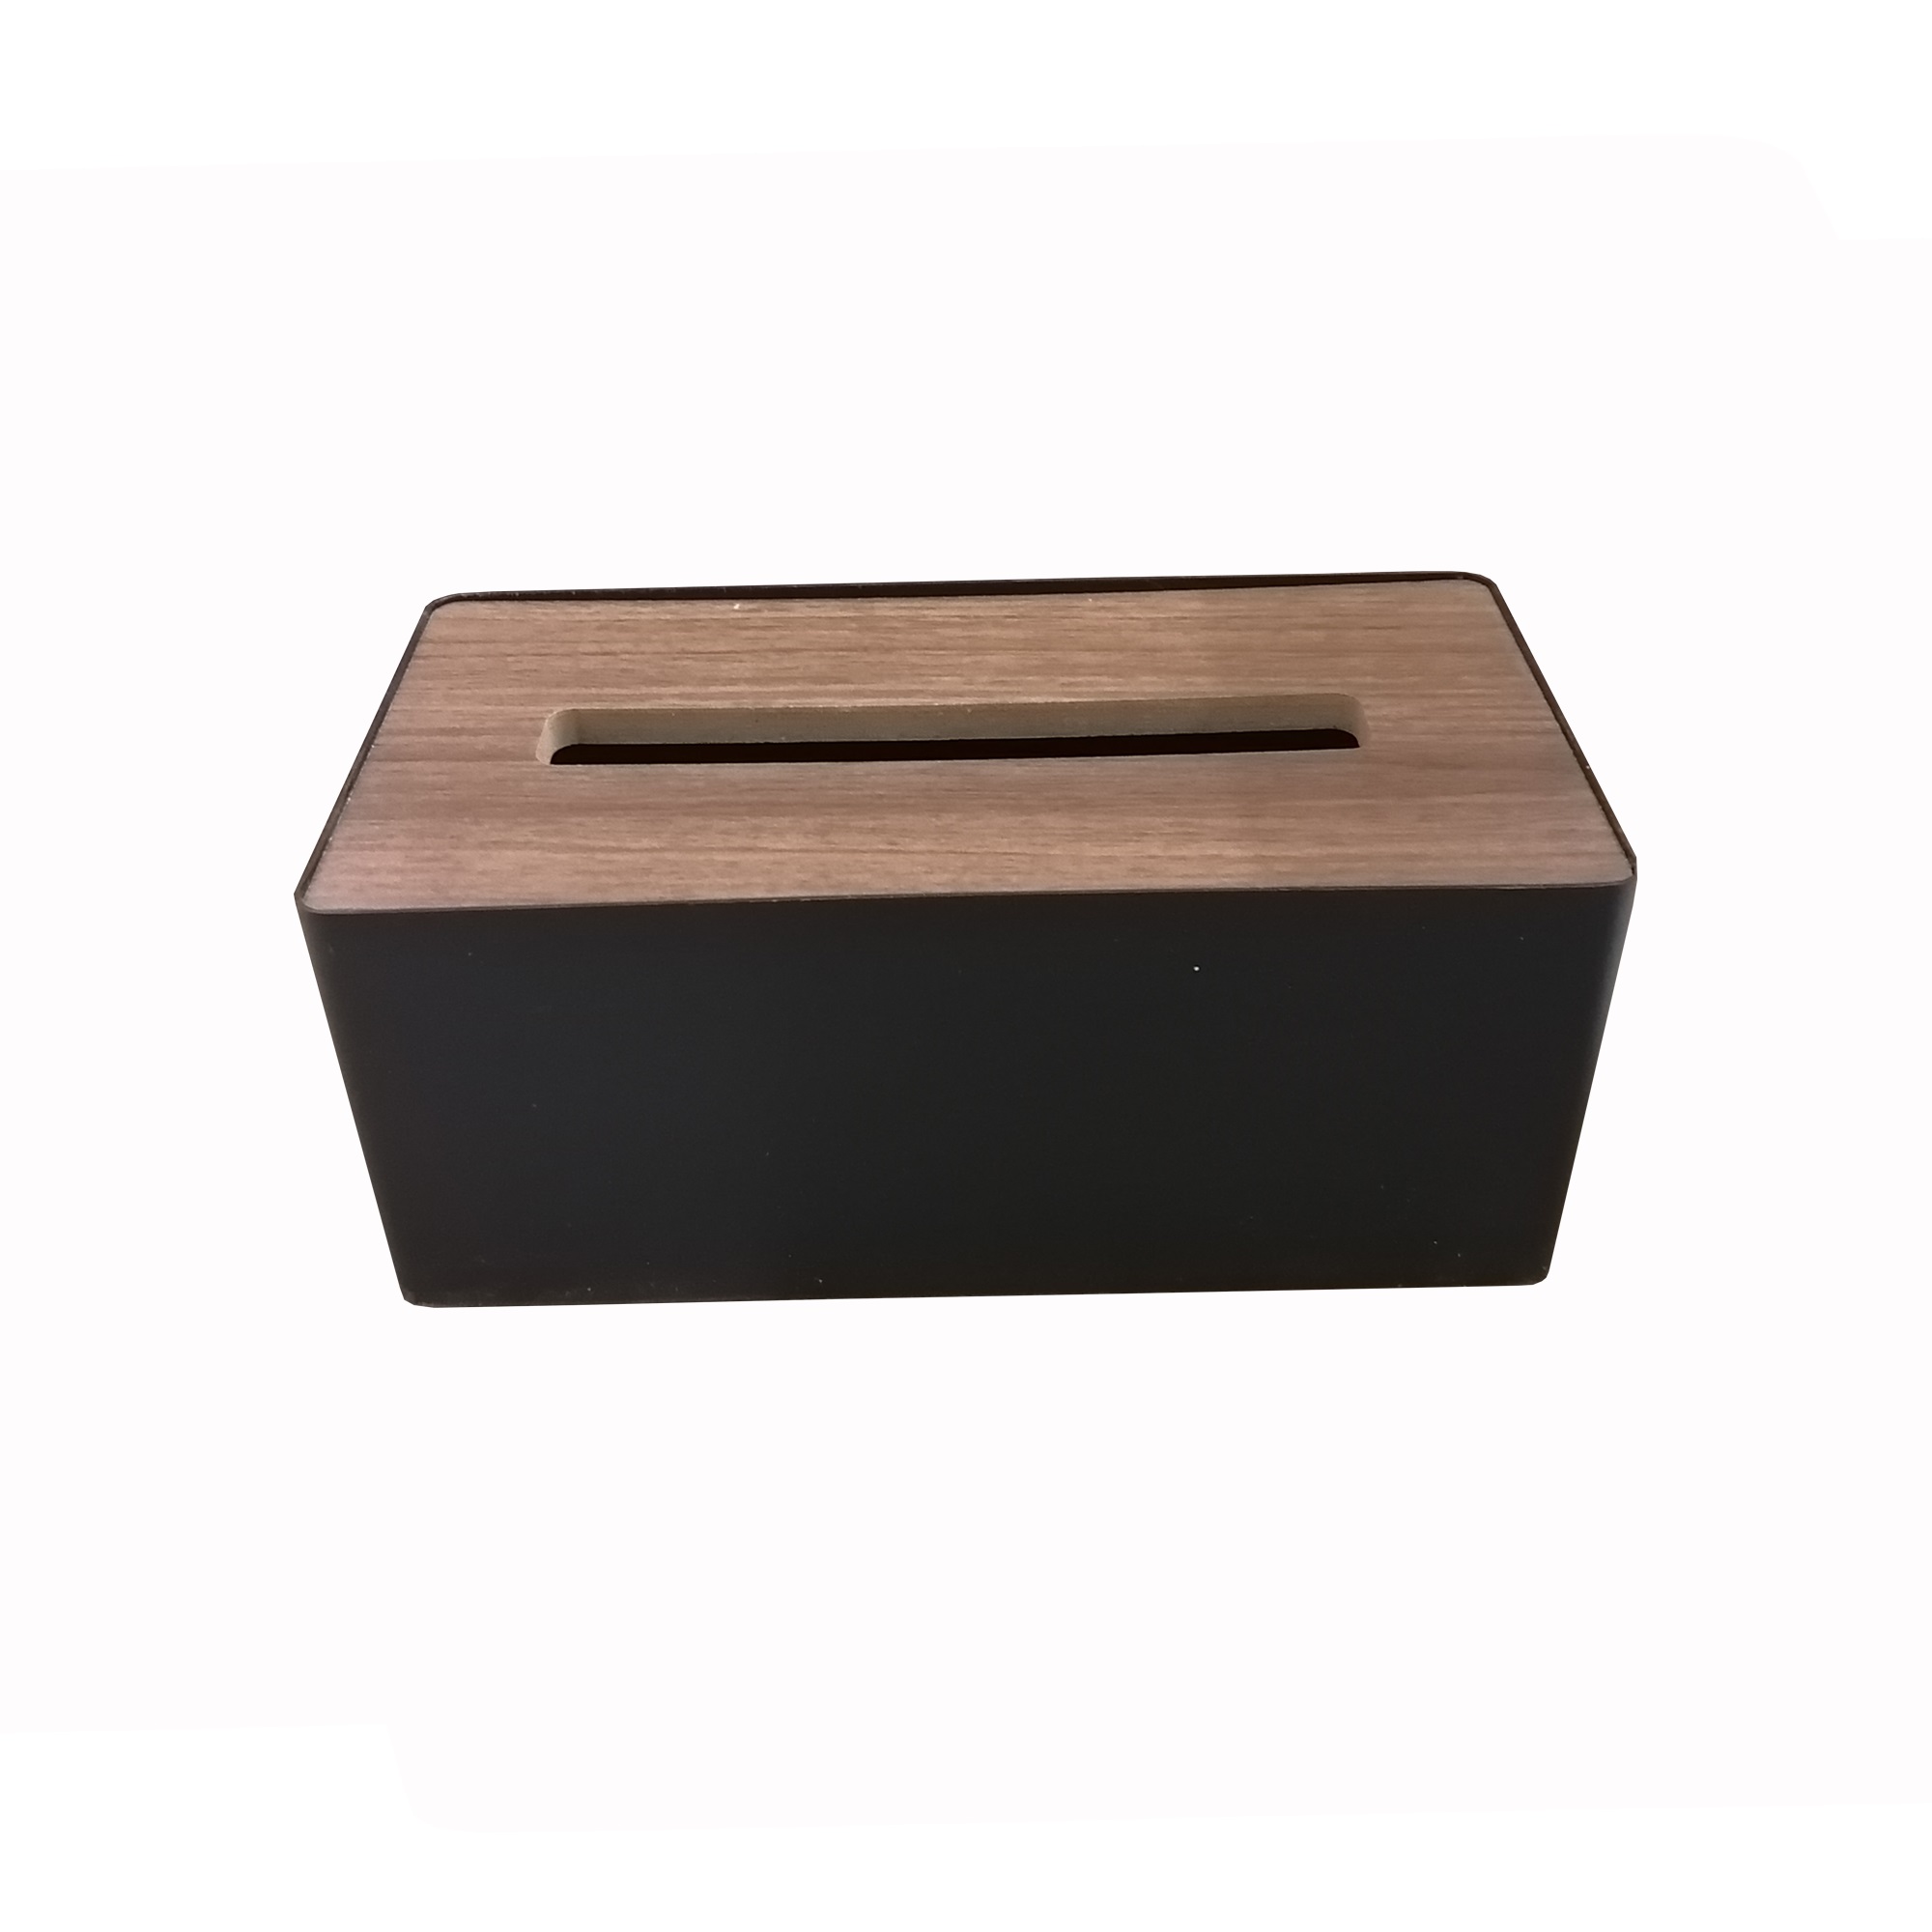  جعبه دستمال کاغذی مدل چوبی کد 6084